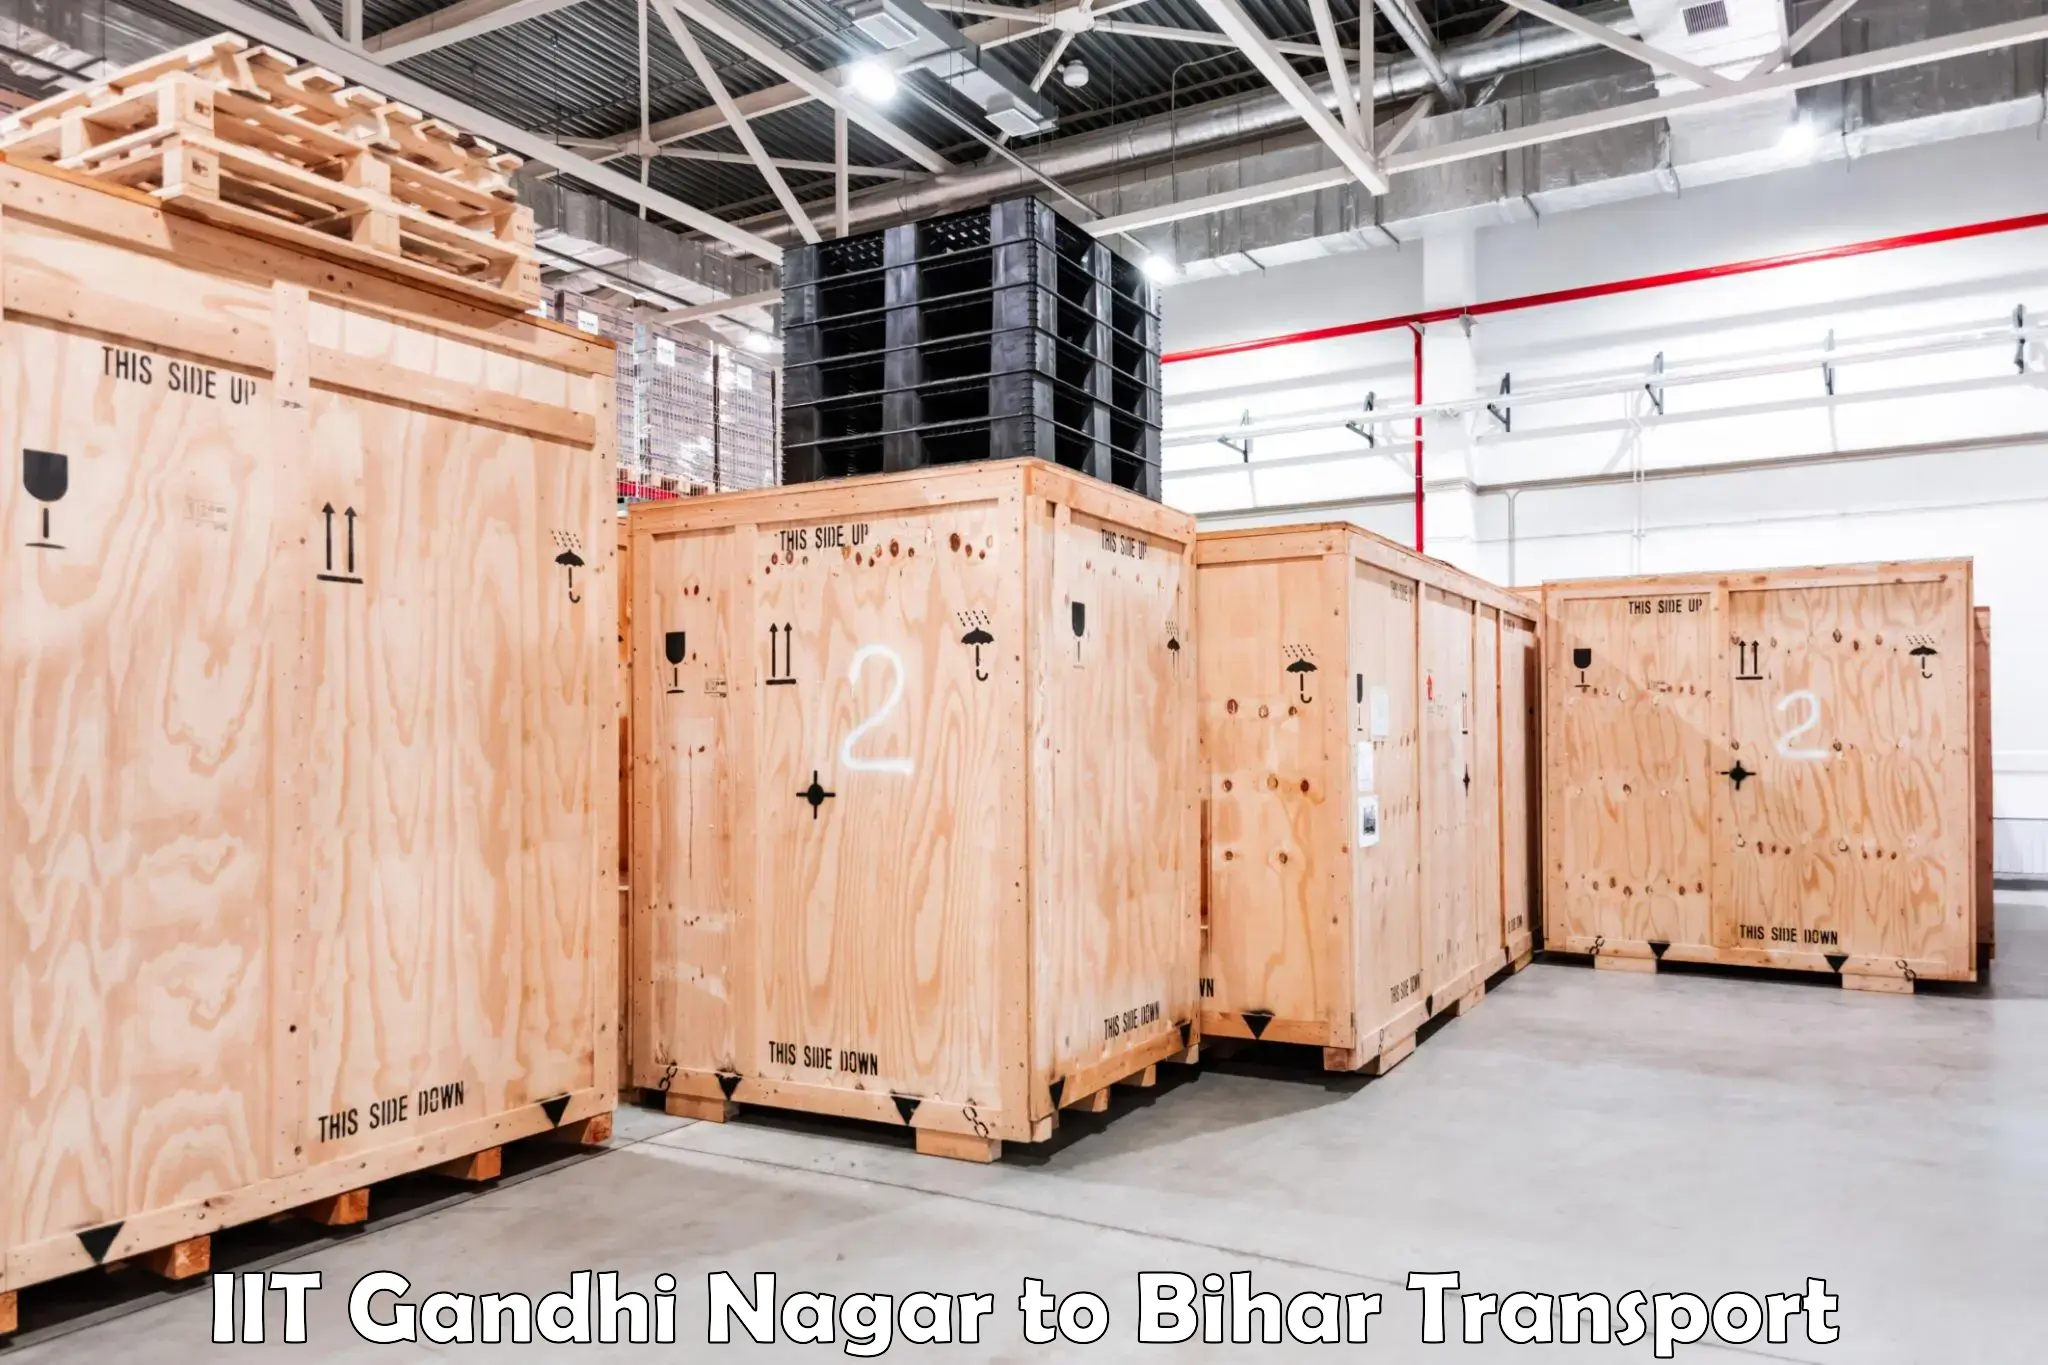 Transport shared services IIT Gandhi Nagar to Mairwa